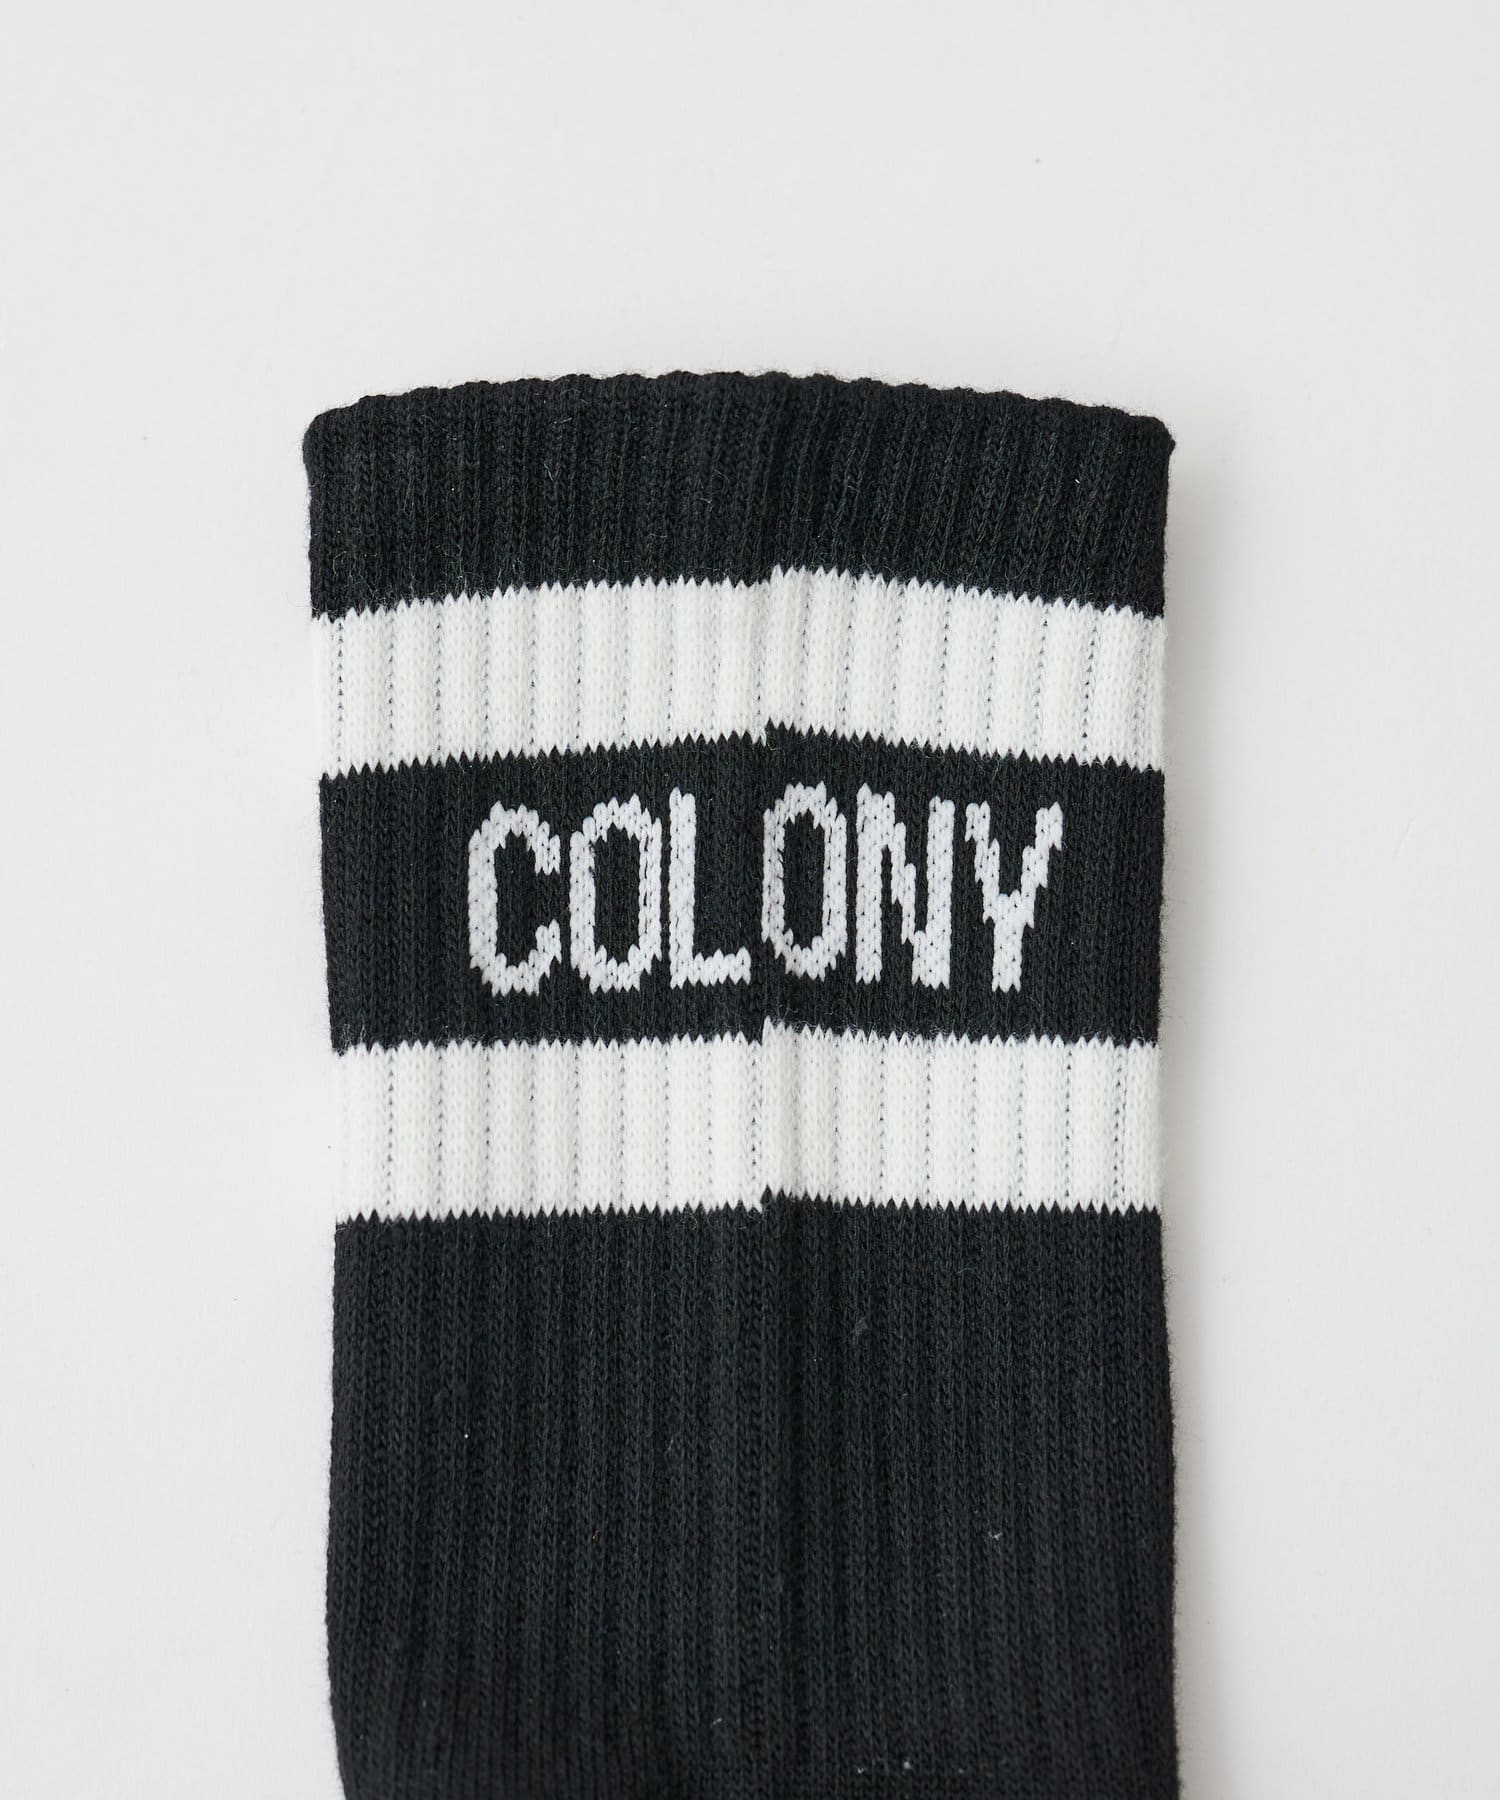 COLONY 2139(コロニー トゥーワンスリーナイン) ロゴ入りラインソックス